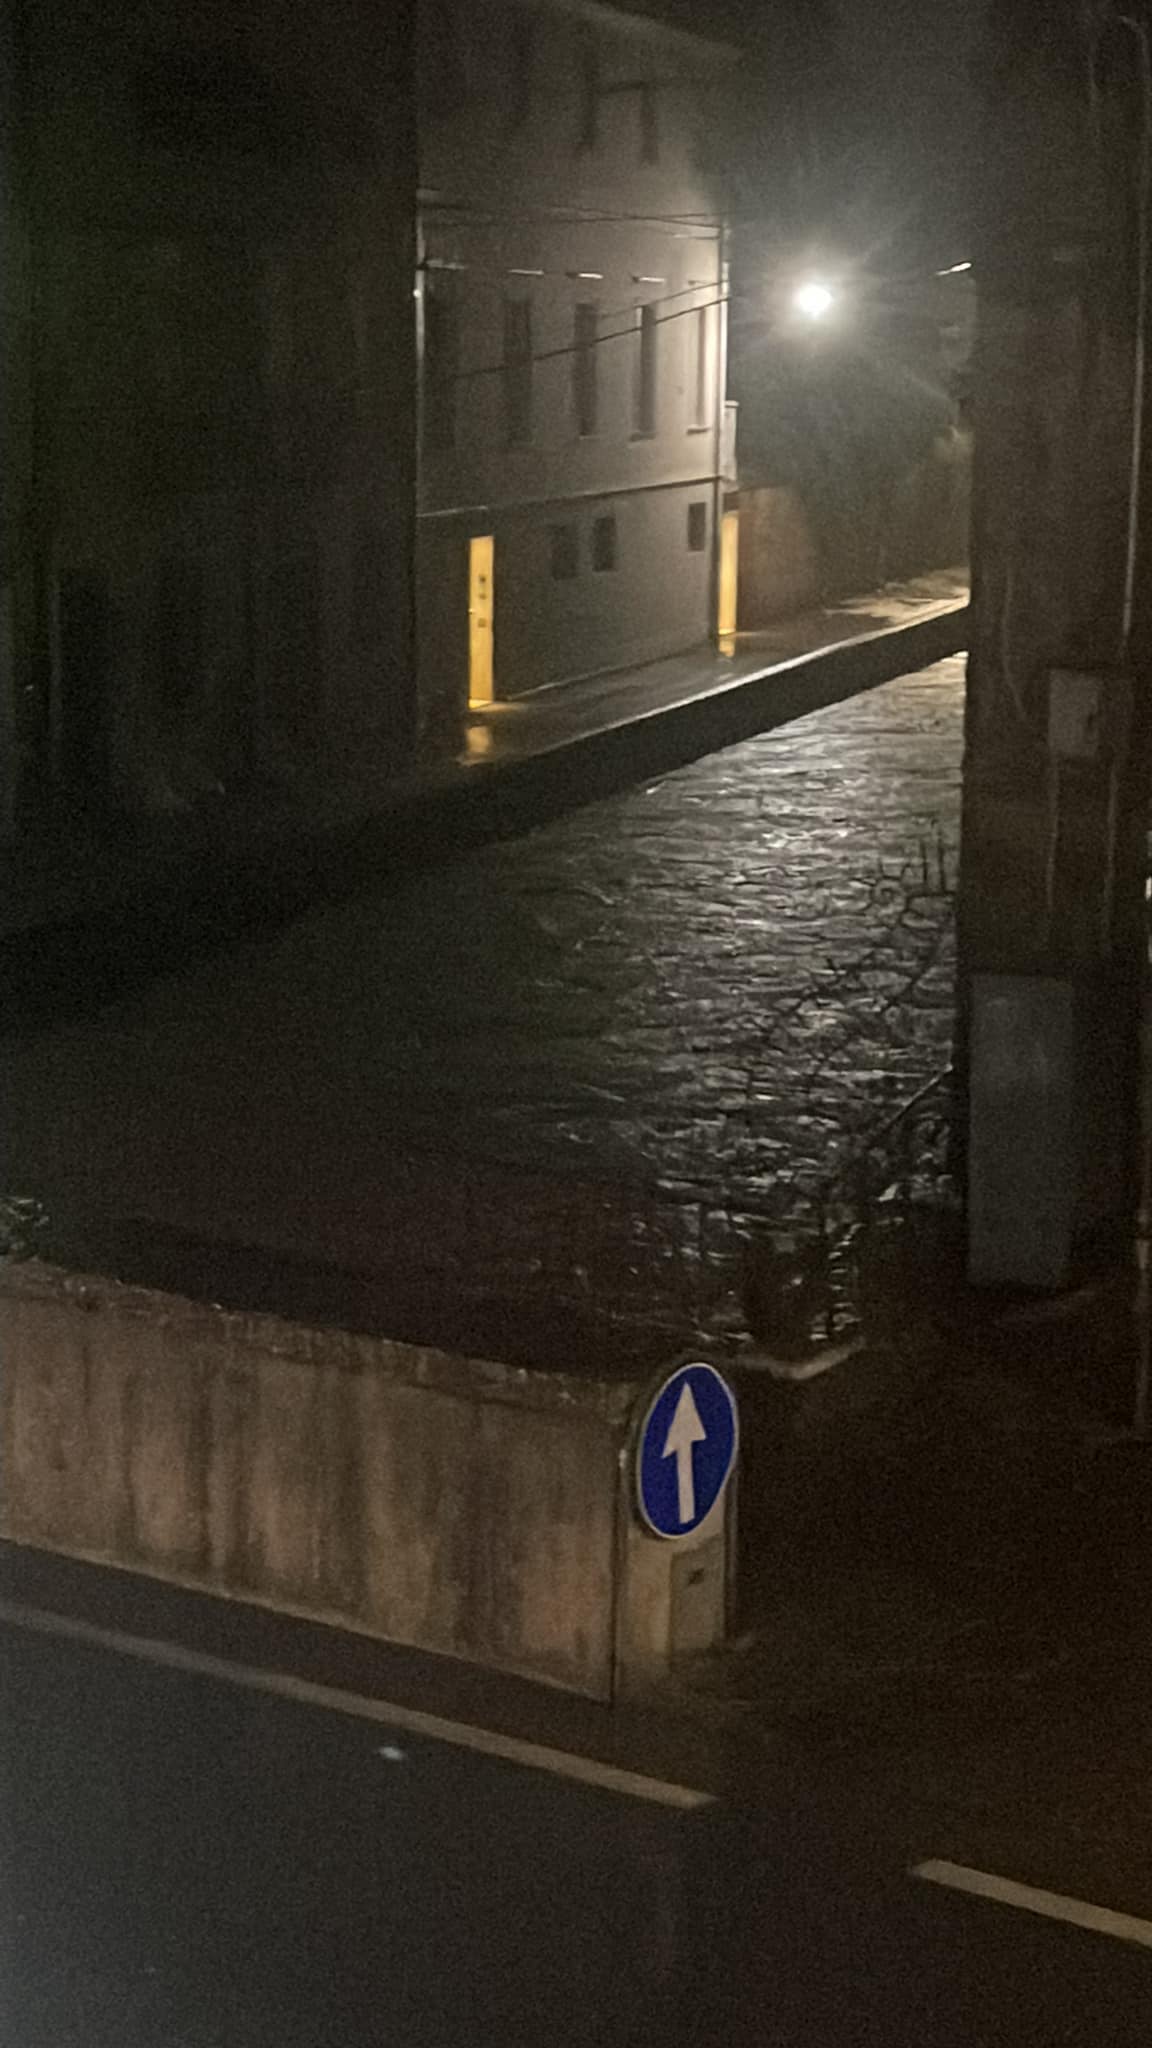 alluvione veneto castelfranco